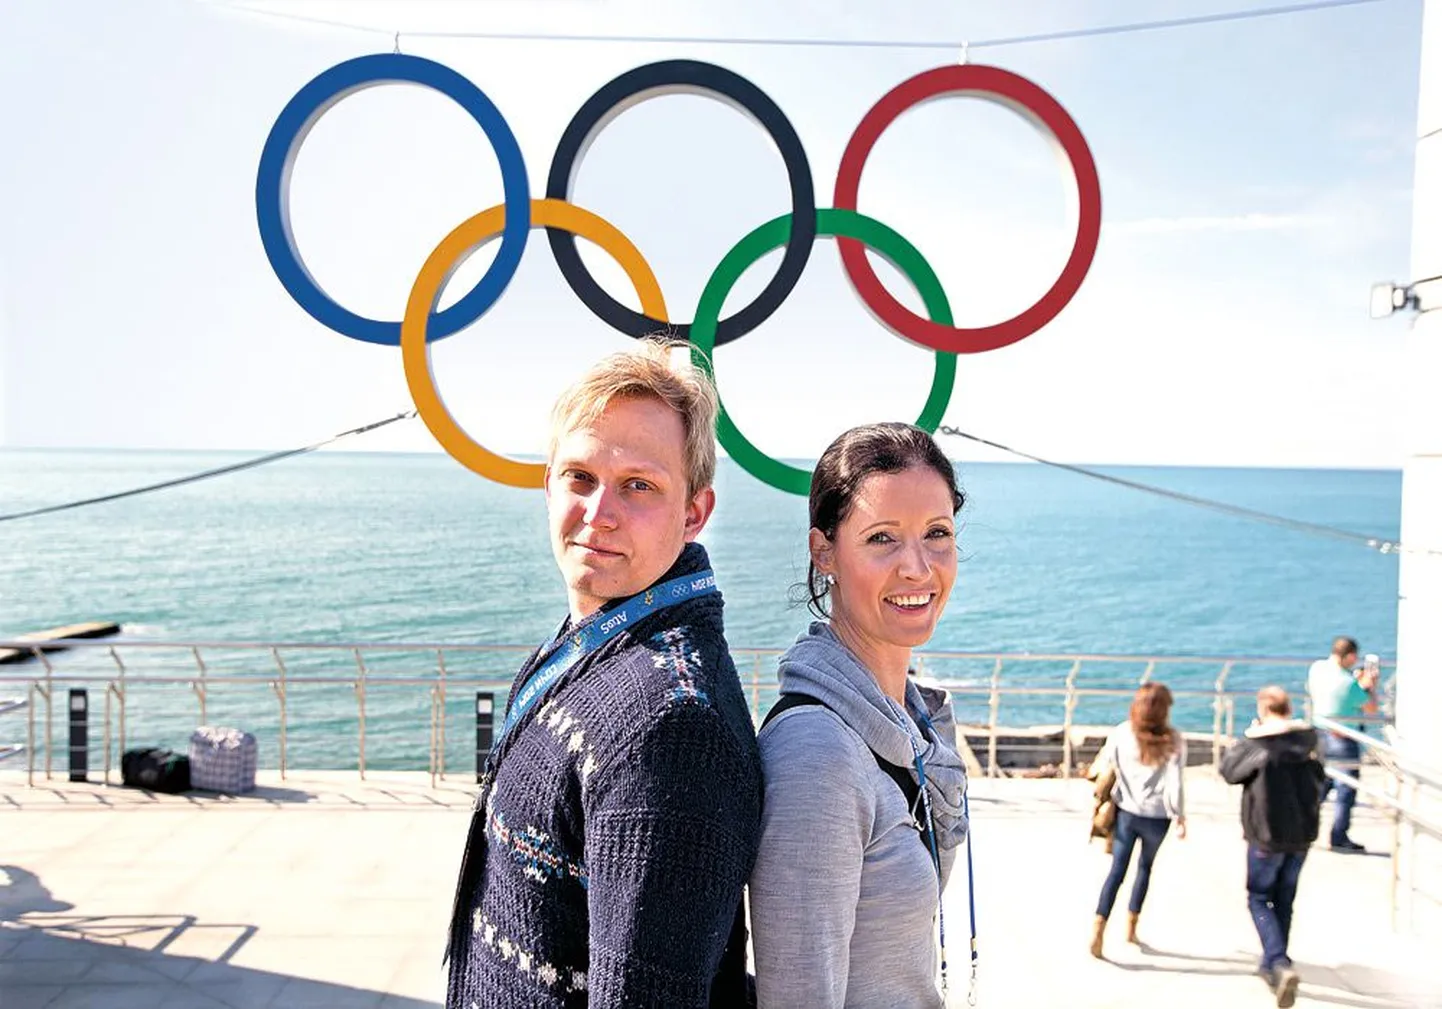 В понедельник у Каарела Нестора и Геи Муру, работающих на Олимпийских играх в Сочи допинг-инспекторами, был выходной, и они воспользовались им, чтобы посмотреть соревнования и зарядиться олимпийским настроением.